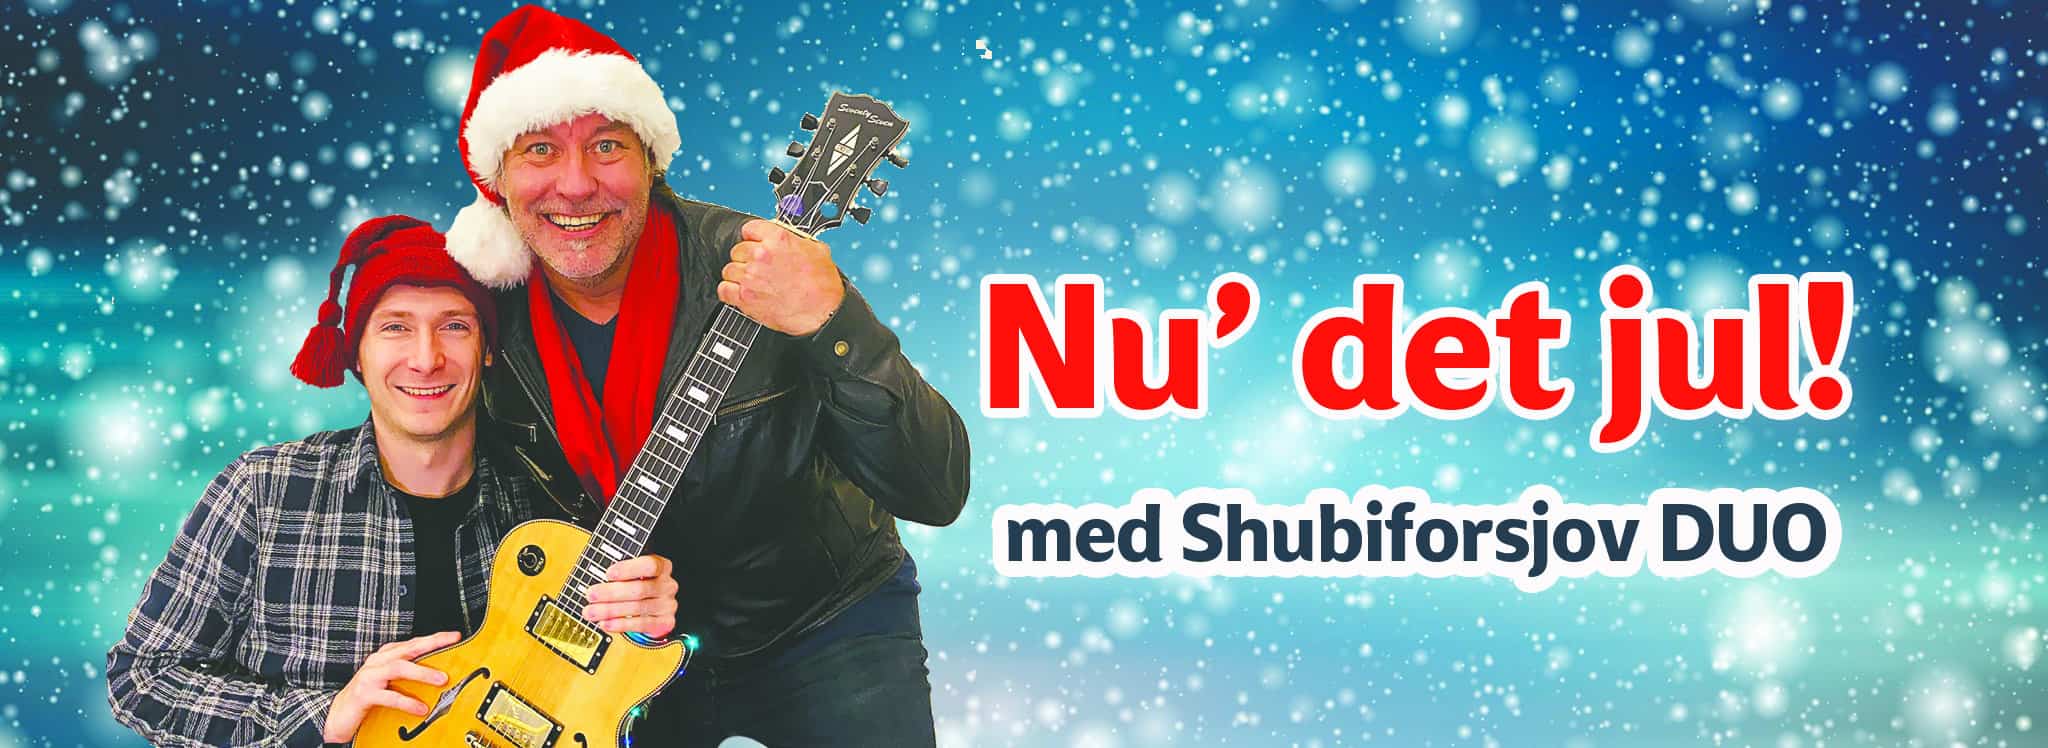 Shubiforsjov DUO jul Banner